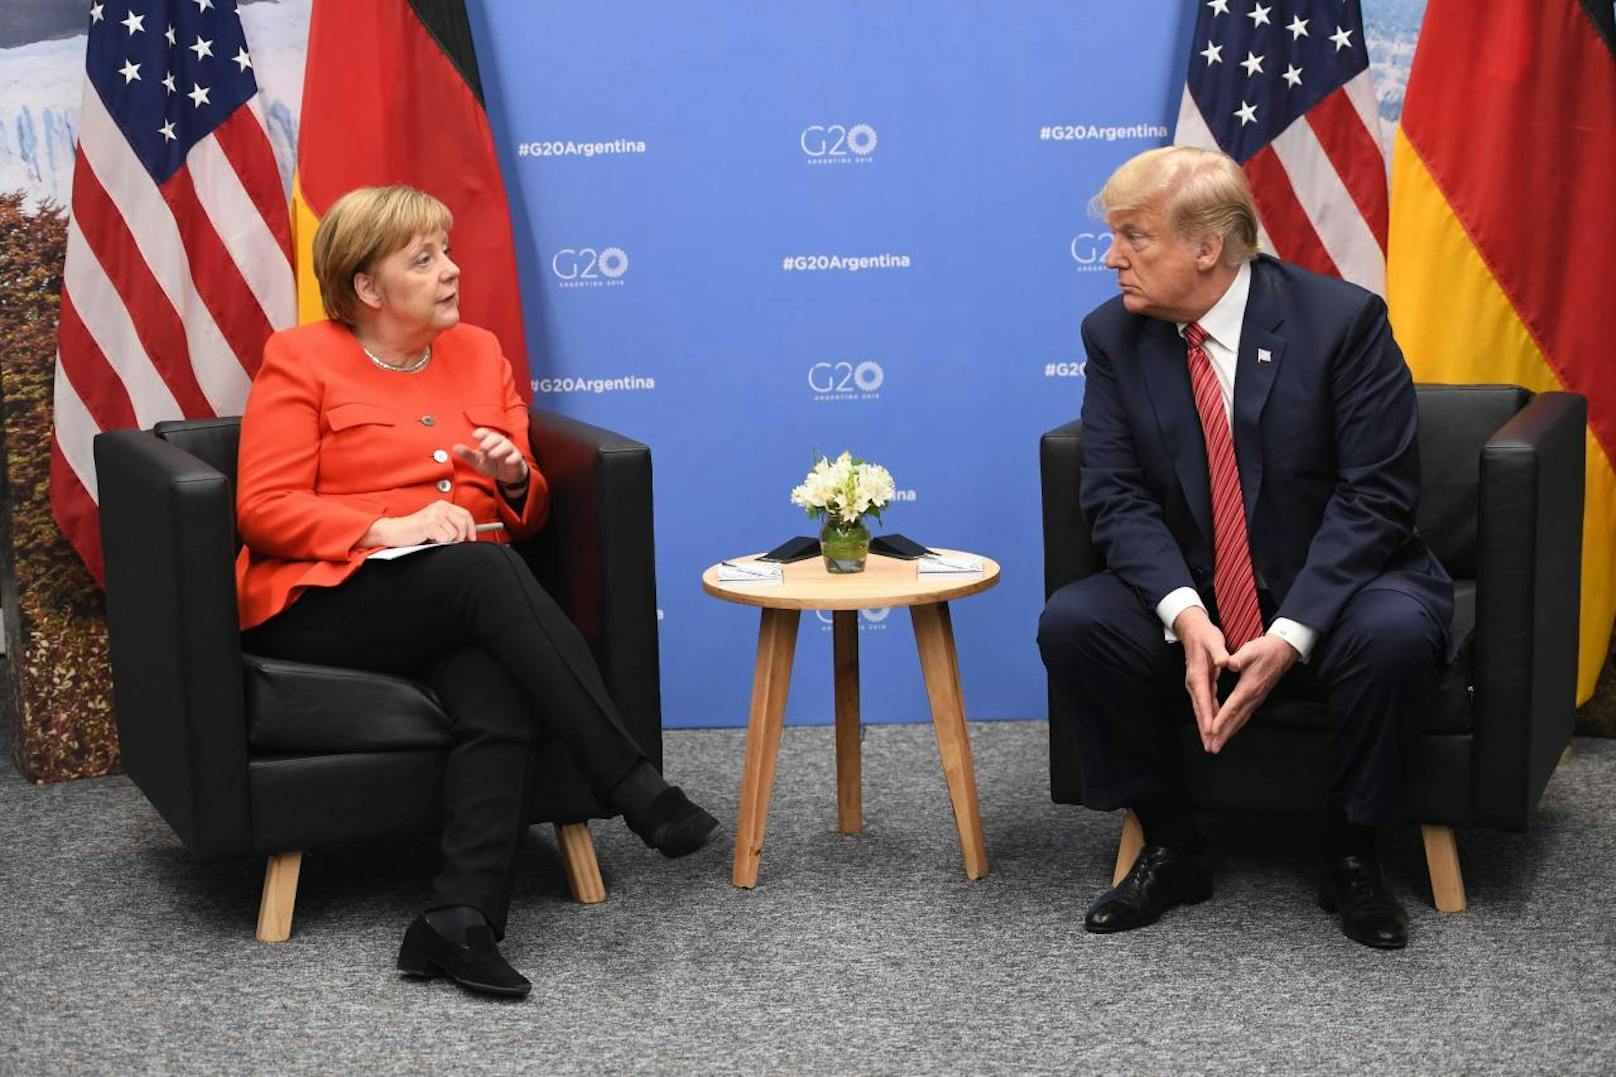 Die deutsche Bundeskanzlerin Angela Merkel (CDU) und US-Präsident Donald Trump sind am Rande des G20-Gipfels zu einem bilateralen Gespräch zusammengekommen.